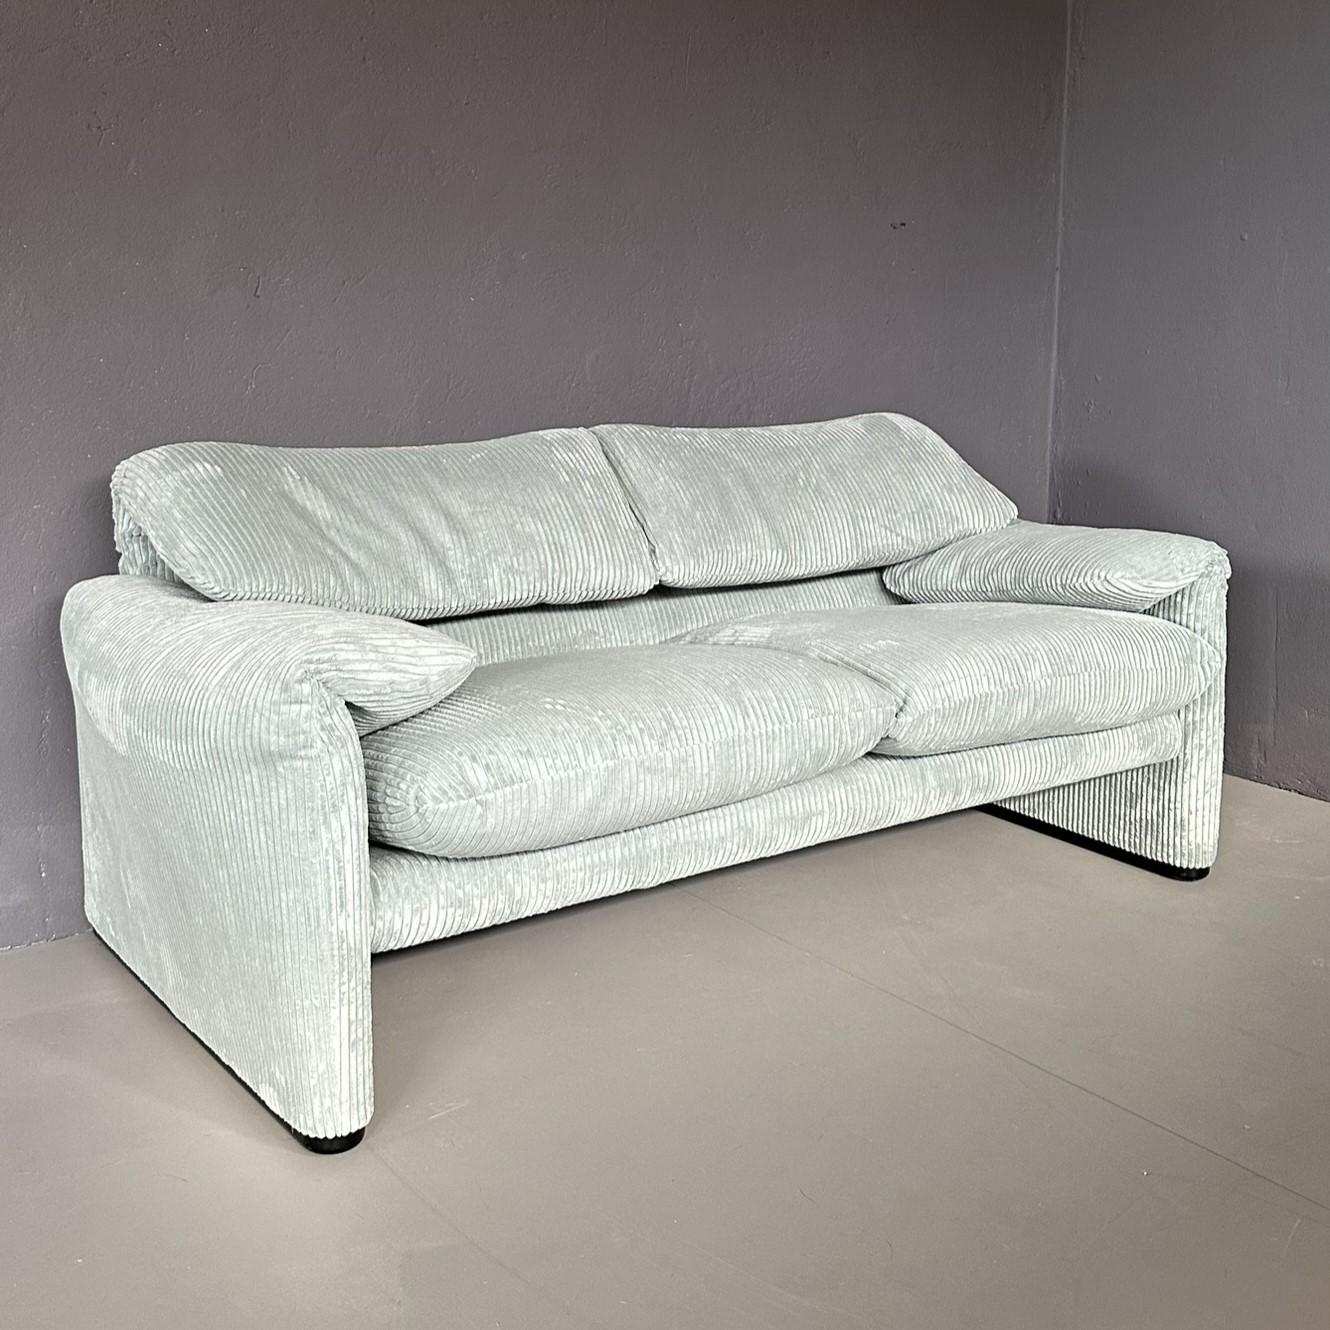 Zweisitziges Sofa Maralunga, entworfen von Vico Magistretti für Cassina in den 1970er Jahren.
Gerippter hellmintgrüner Stoffbezug.
Die Bewegung der Rückenlehne und der seitlichen Armlehnen ist funktionell.
Sehr guter Zustand